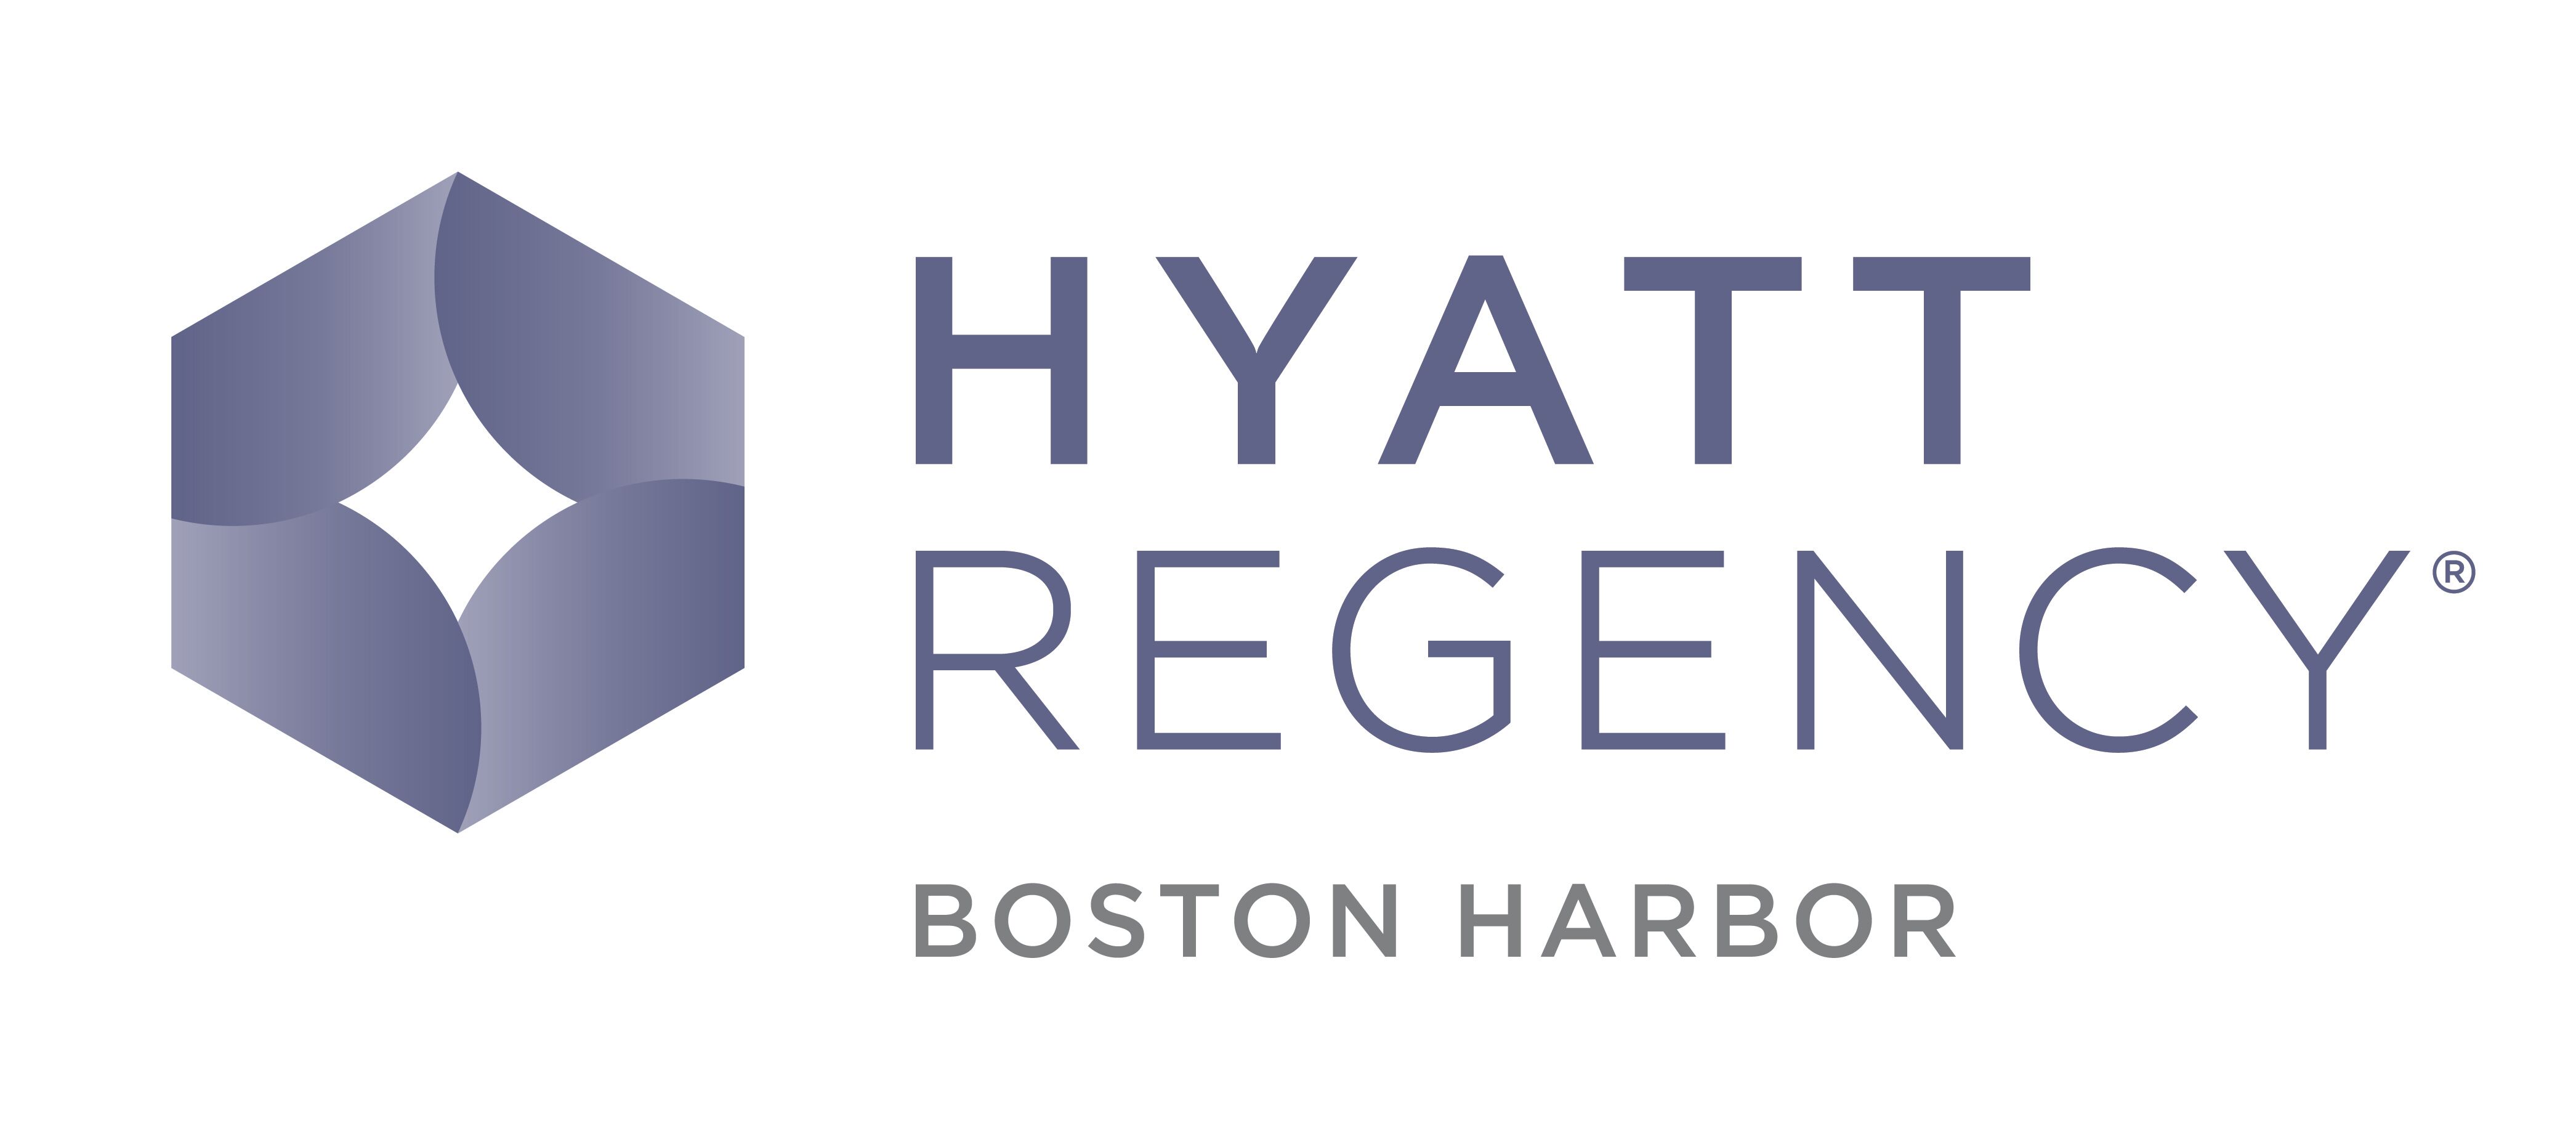 Hyatt Regency Boston Harbor  Reception Venues - The Knot